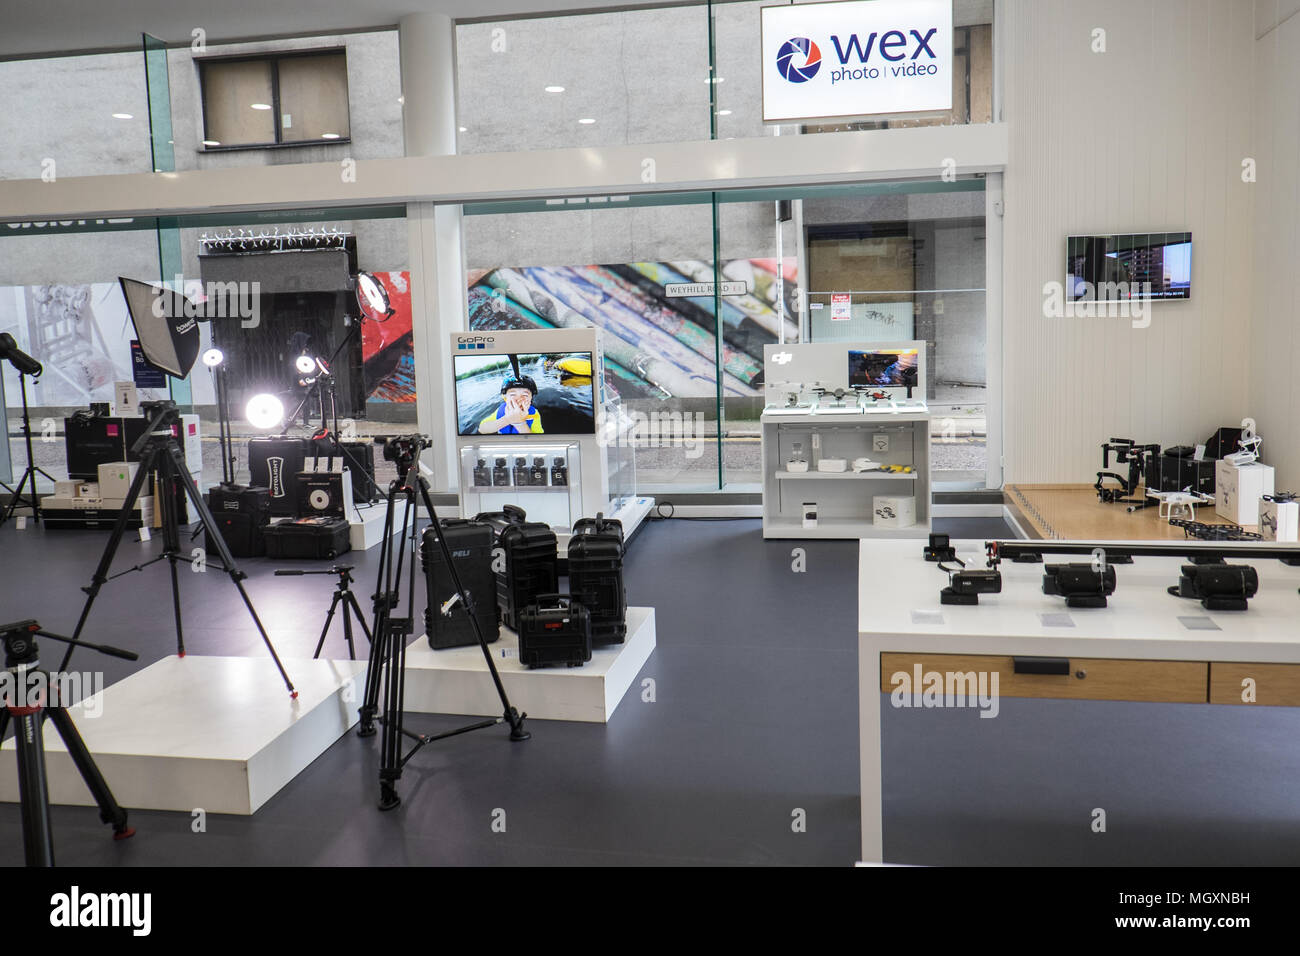 Wex Wex, Foto, Fotografie, größten, Kamera, Store, in, Commercial Street, London, England, Hauptstadt, Stadt, Großbritannien, Großbritannien, Großbritannien, Großbritannien, Europa, Europäischen, Stockfoto